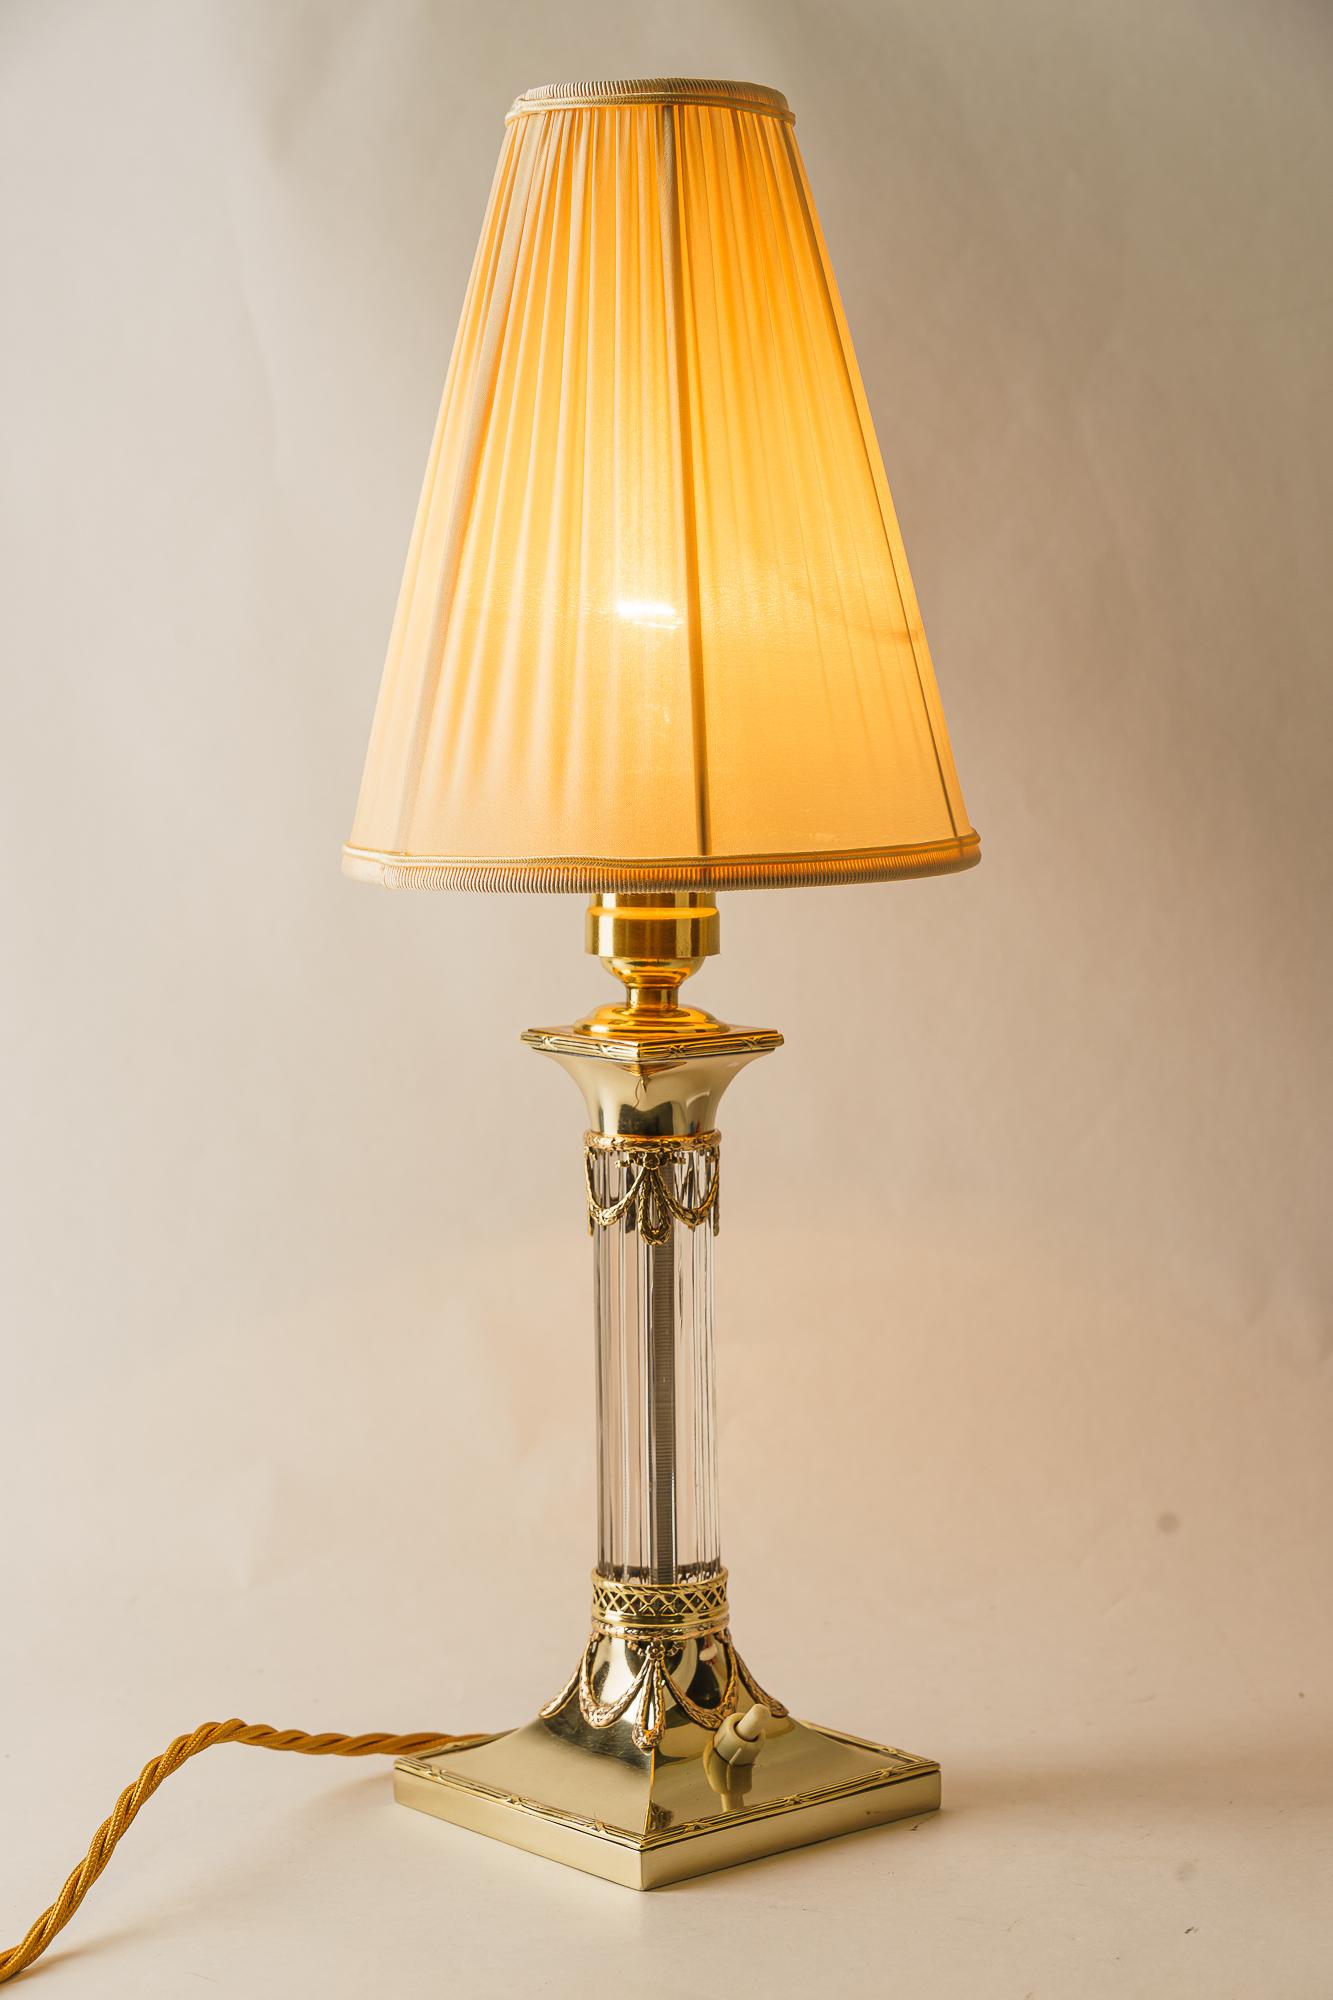 Lampe de table Jugendstil avec abat-jour en tissu viennois vers 1910 
Laiton poli et émaillé au four
L'abat-jour en tissu est remplacé (neuf).